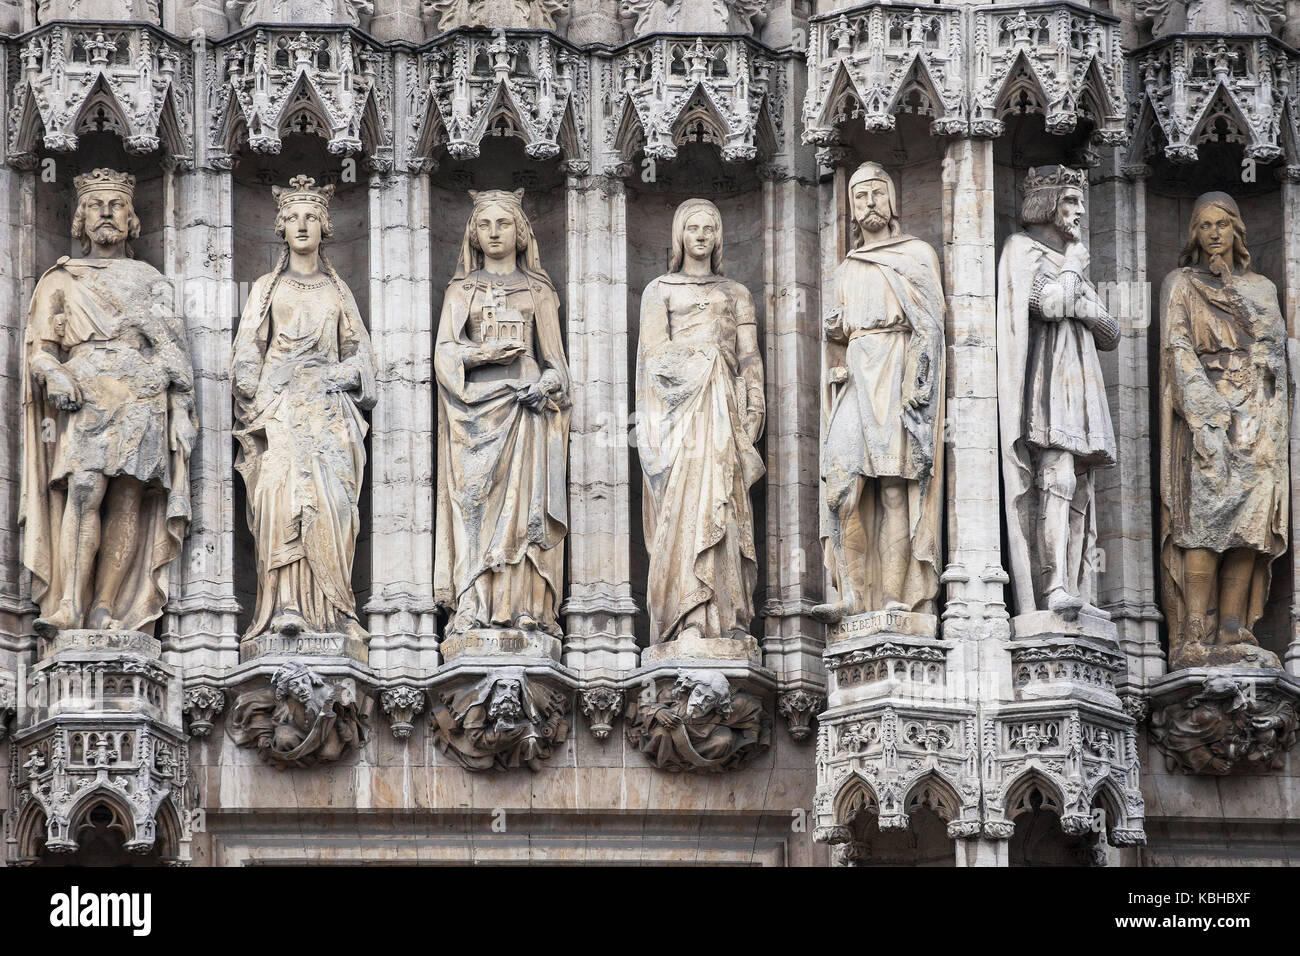 Le statue dei duchi e duchesse di brabant nella facciata del municipio di Bruxelles, Belgio. Foto Stock